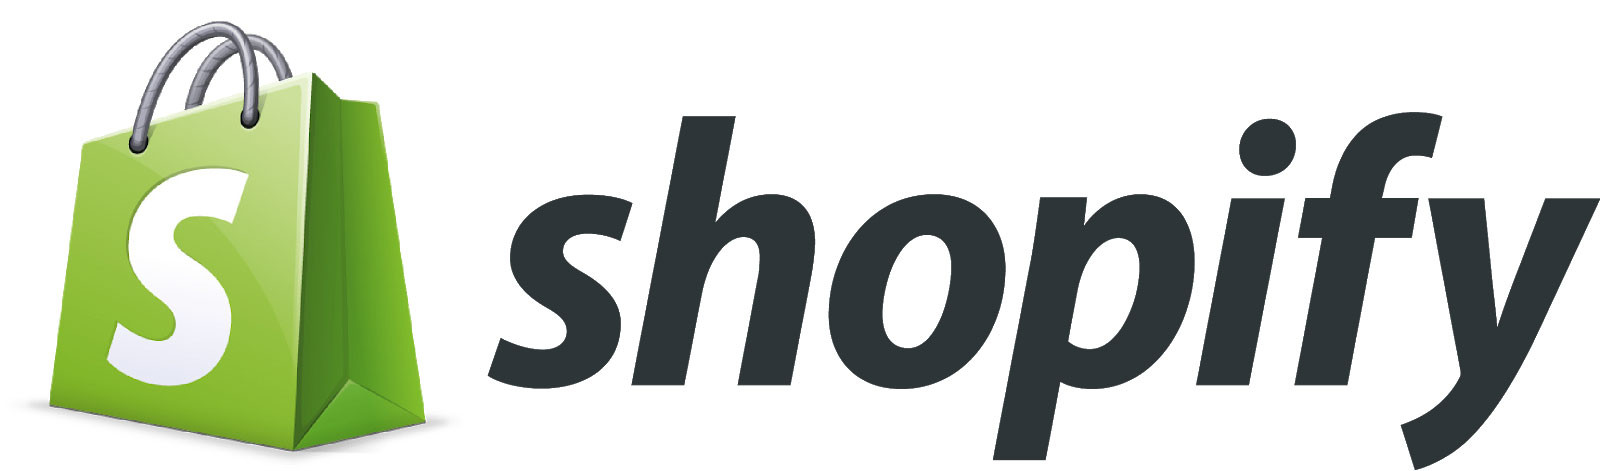 Преимущества Shopify:  Удобное управление товарами Персонализация онлайн магазина